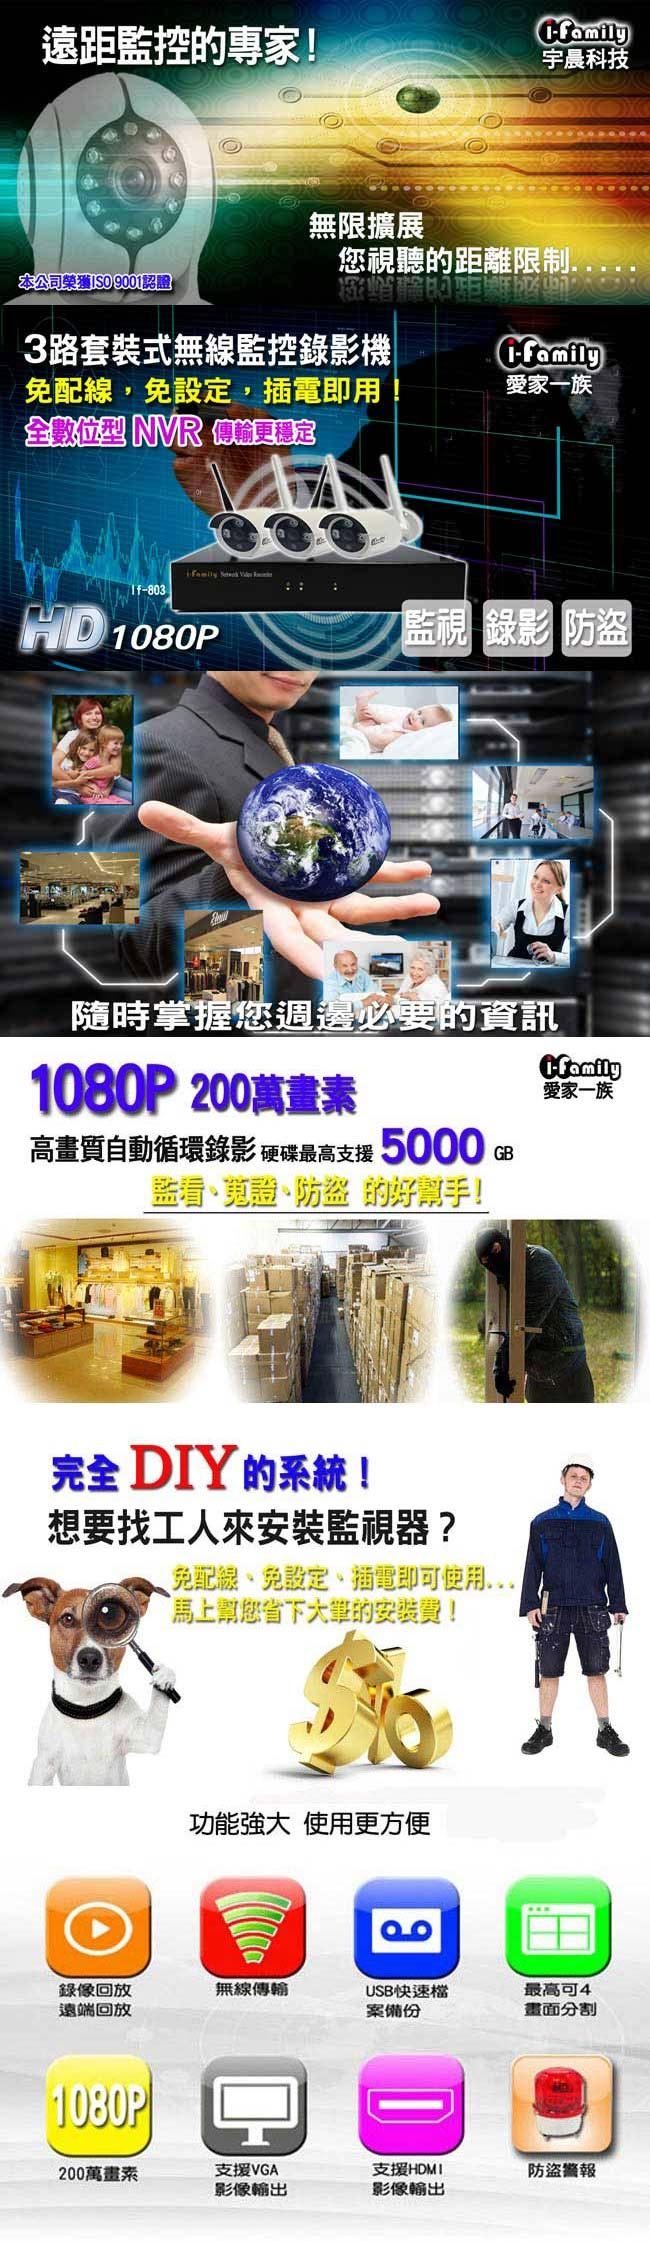 宇晨I-Family 免配線/免設定1080P四路式無線監視系統套裝一機三鏡